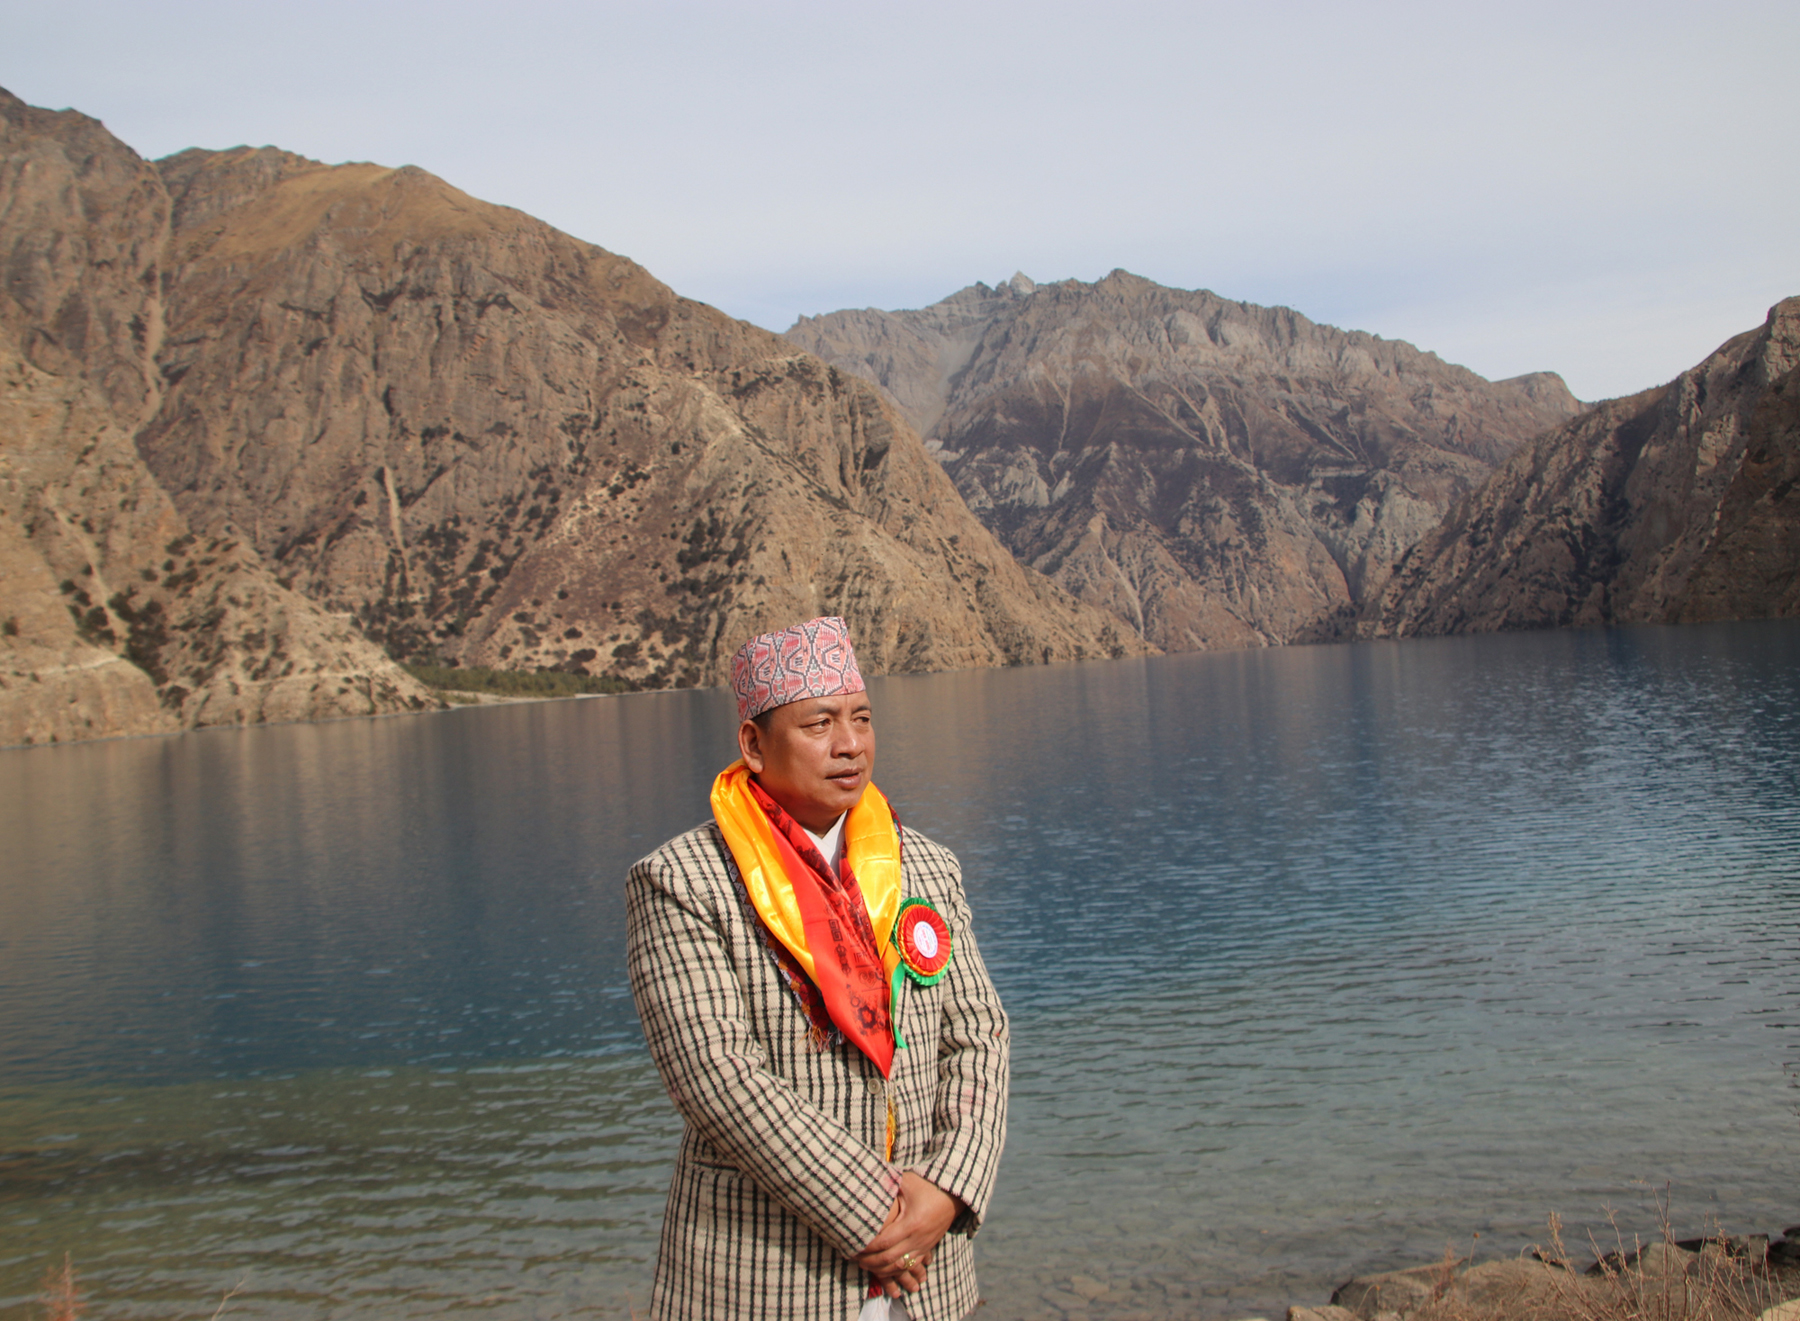 पर्यटन प्रवद्धर्नका लागि फोक्सुण्डो र राराको जल लिएर काठमाडौं फर्किए उपराष्ट्रपति